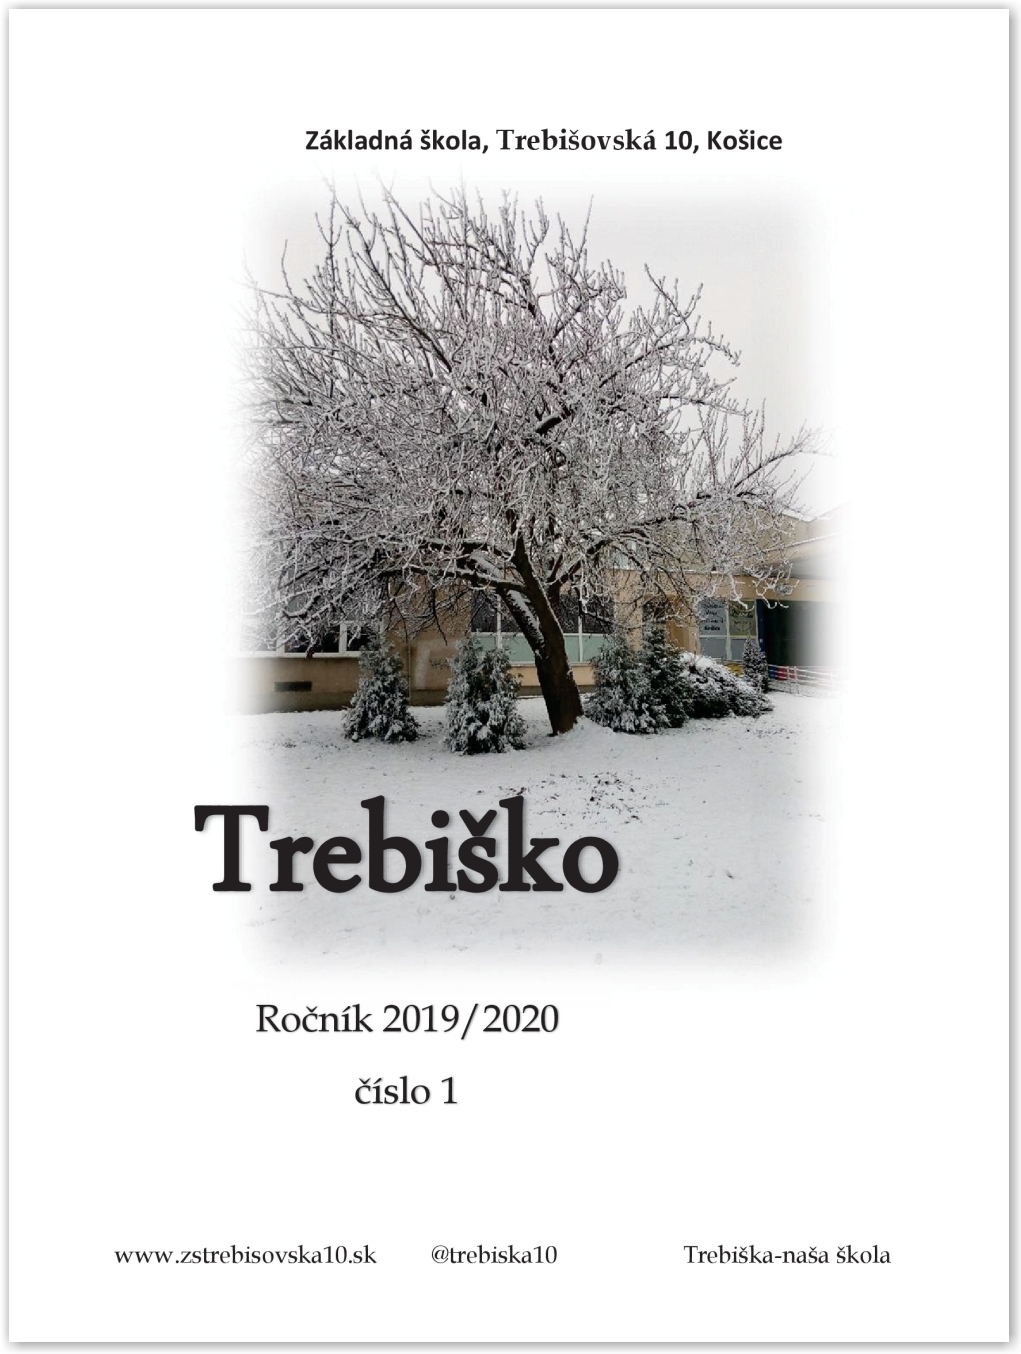 Trebiško